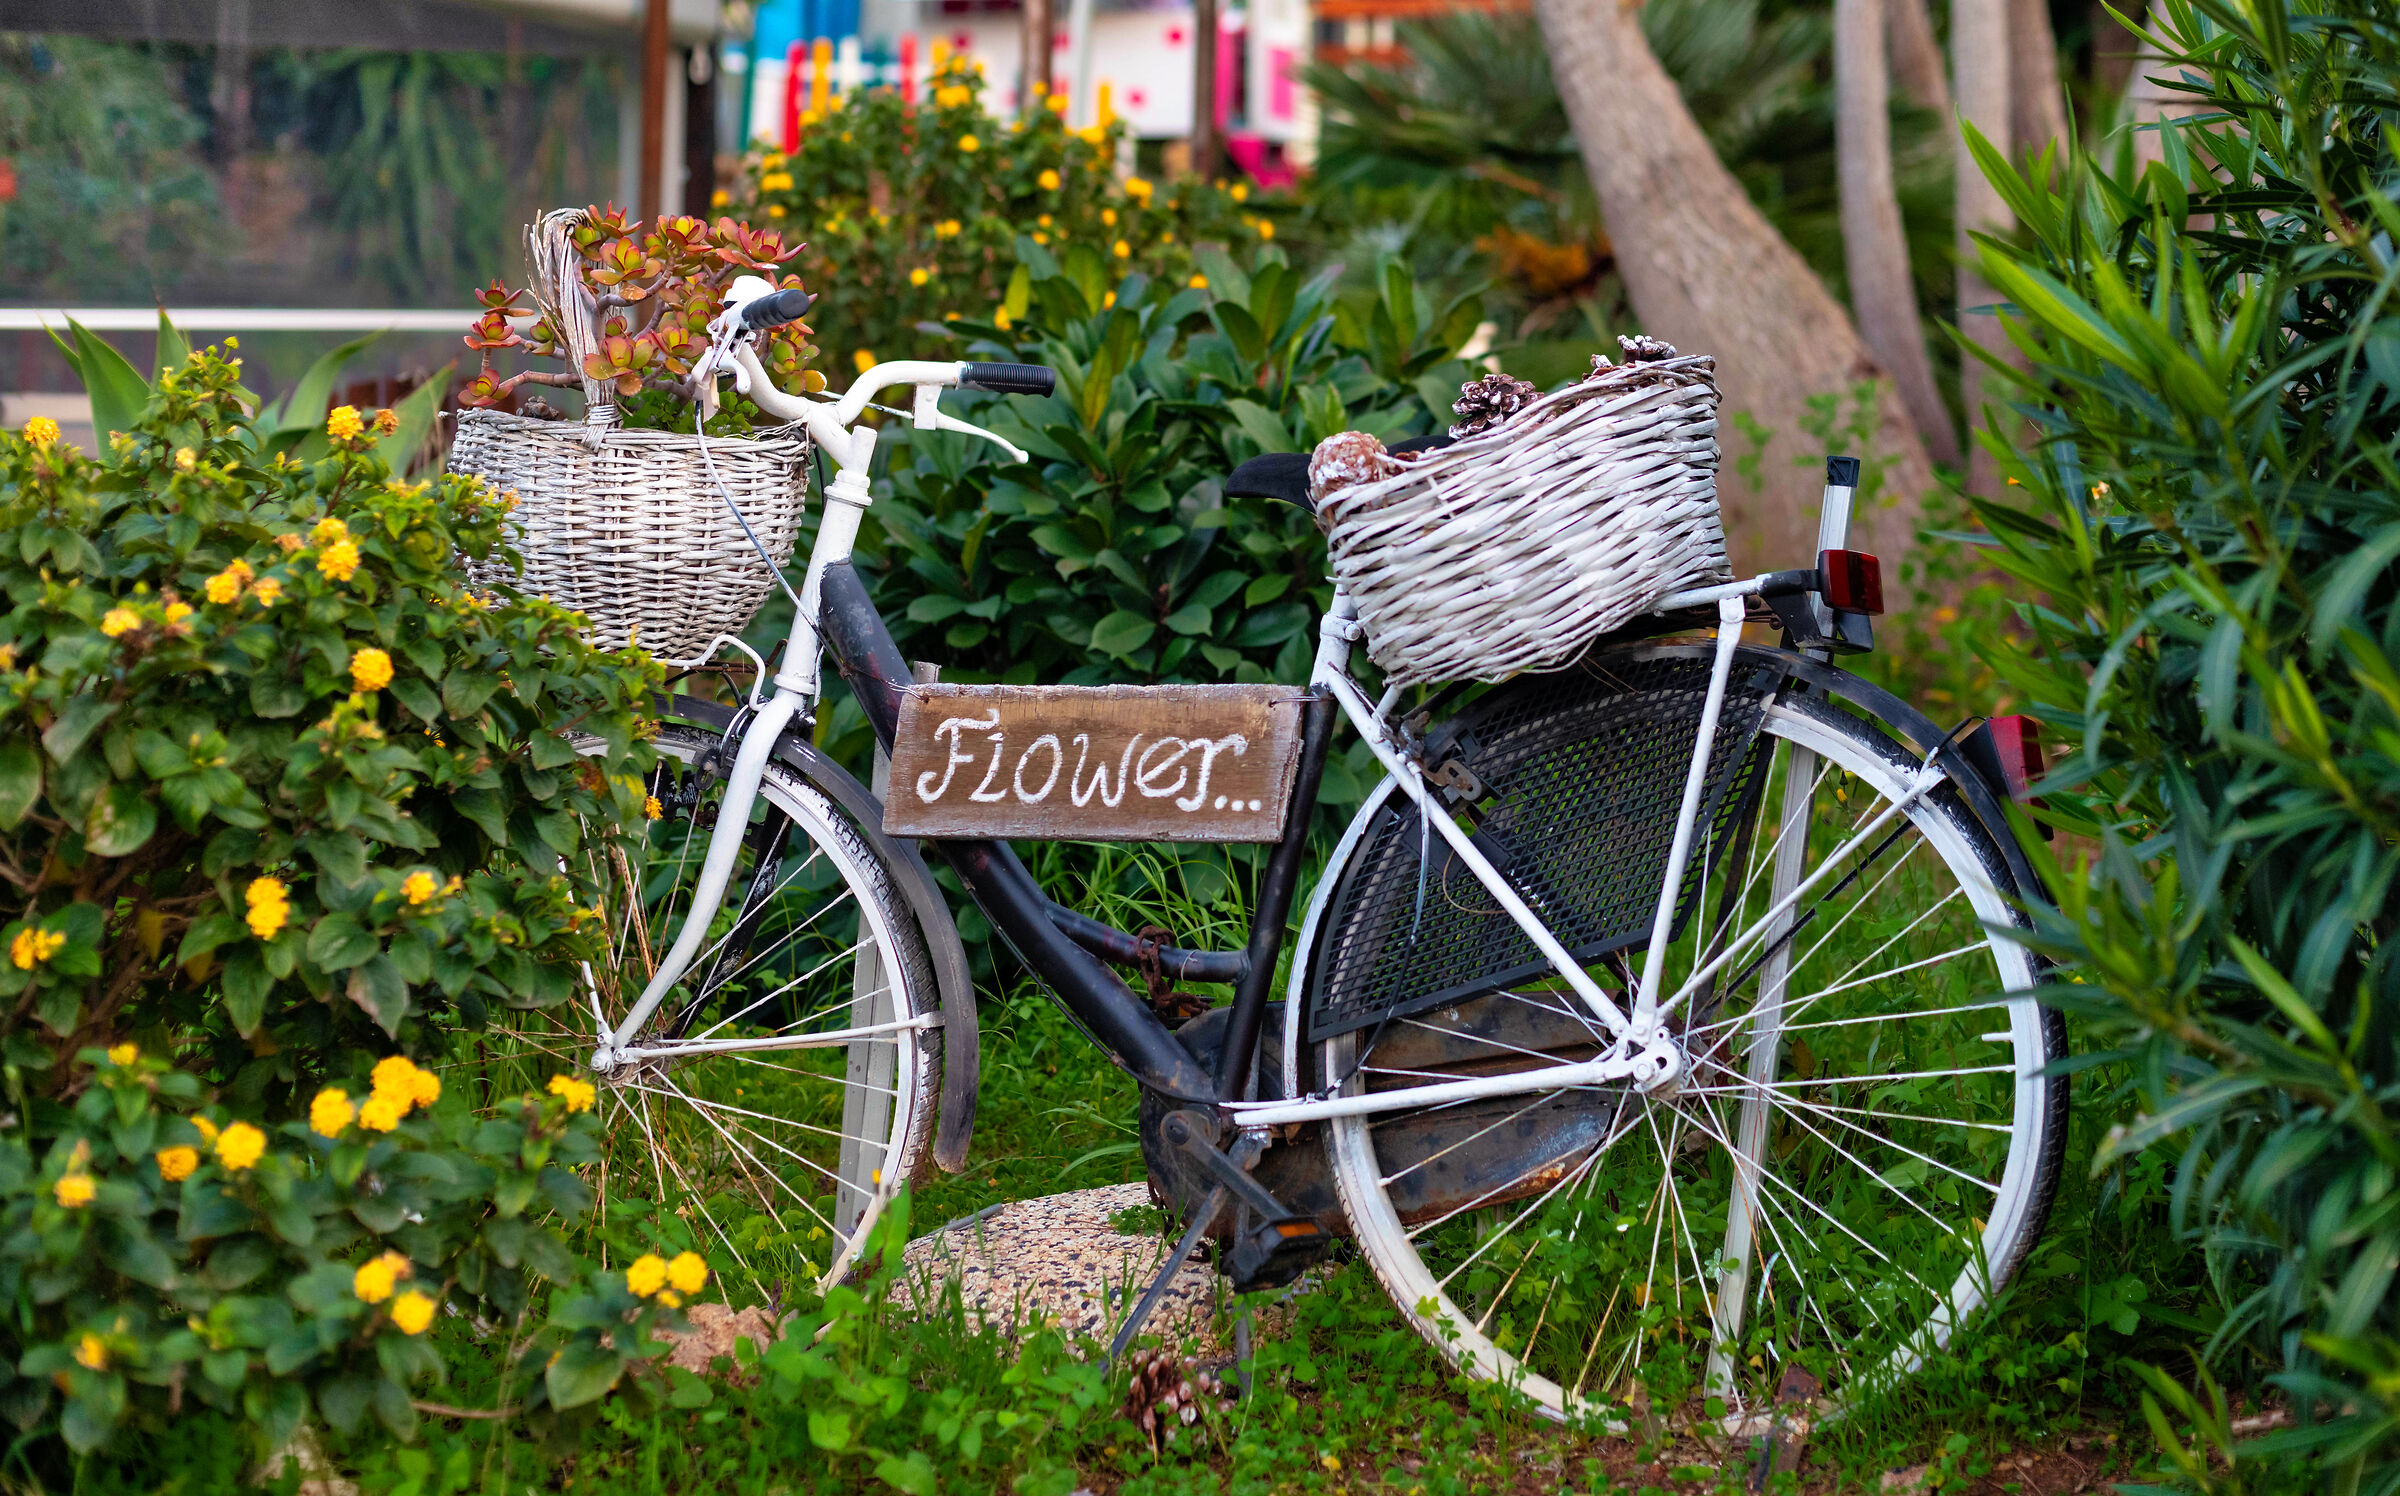 Flowers by bike...